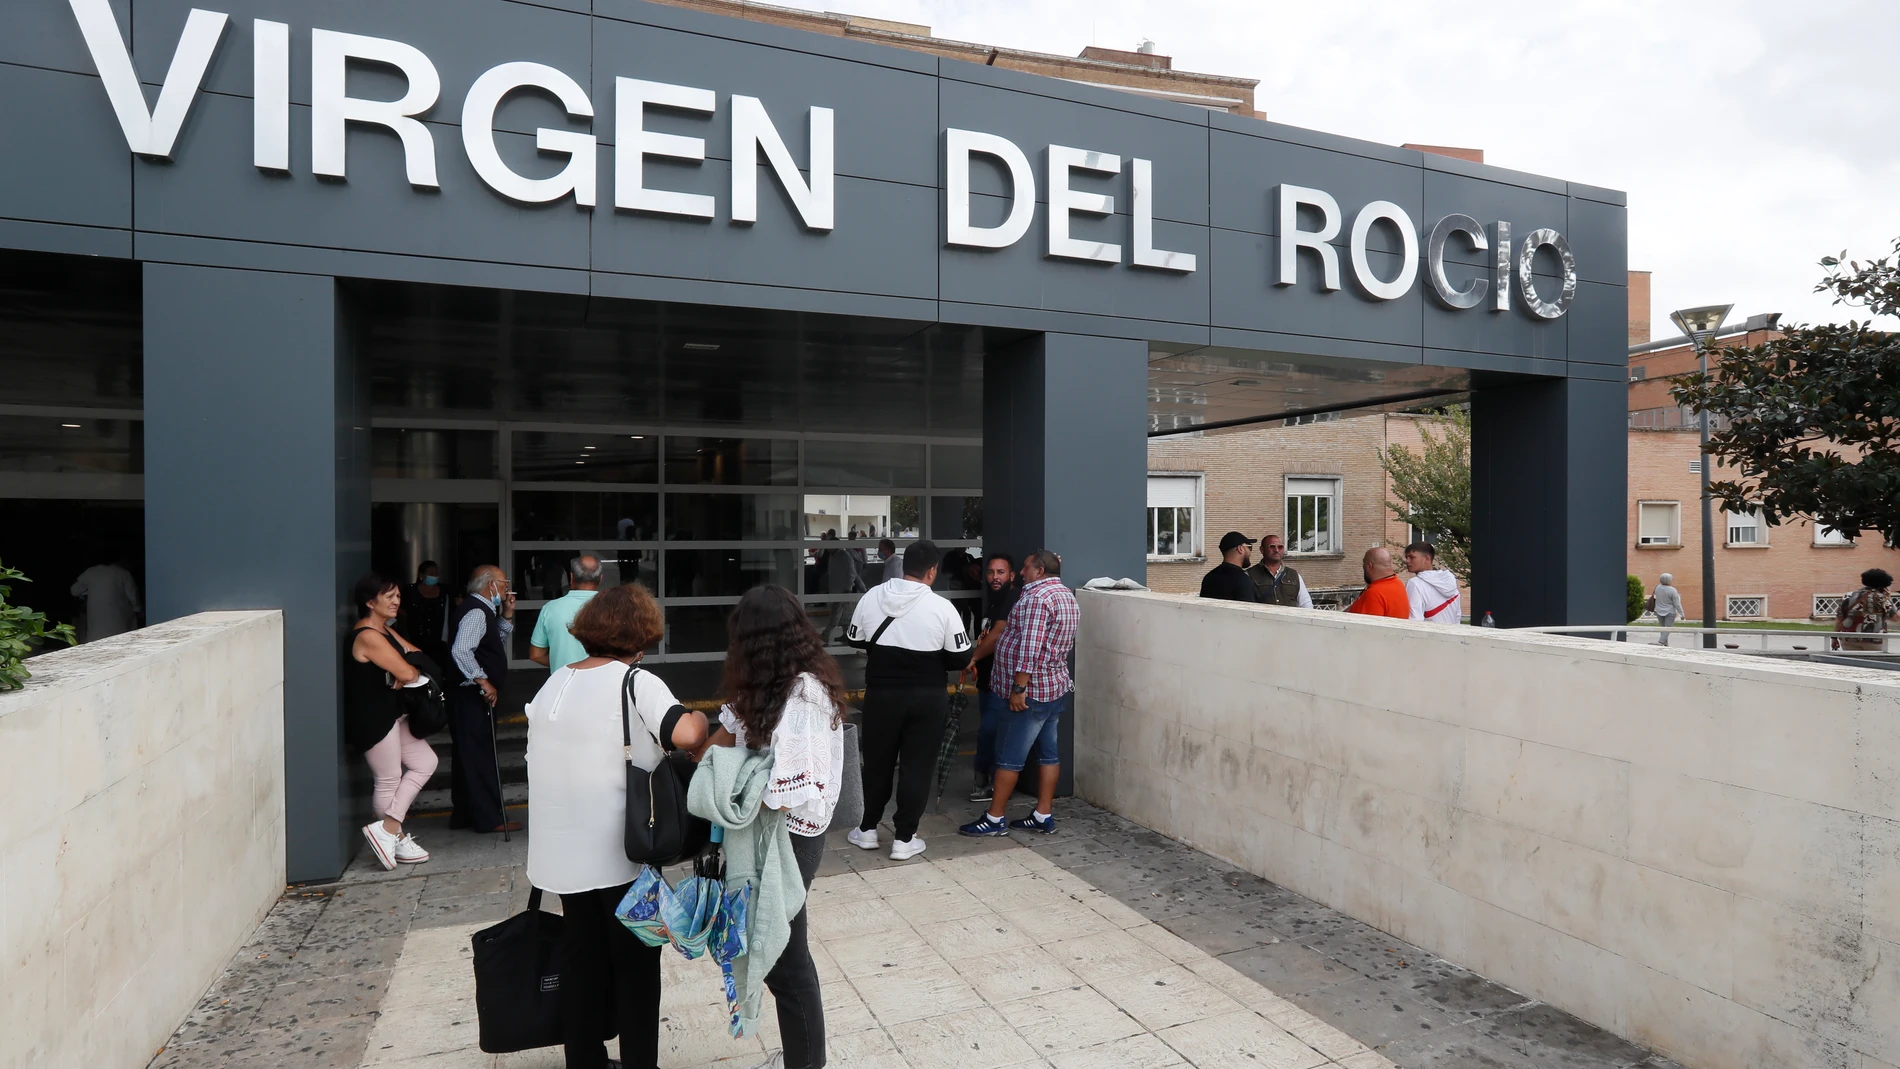 Entrada del hospital Virgen del Rocío de Sevilla donde se encontraba hospitalizado Kiko Rivera. EFE/José Manuel Vidal